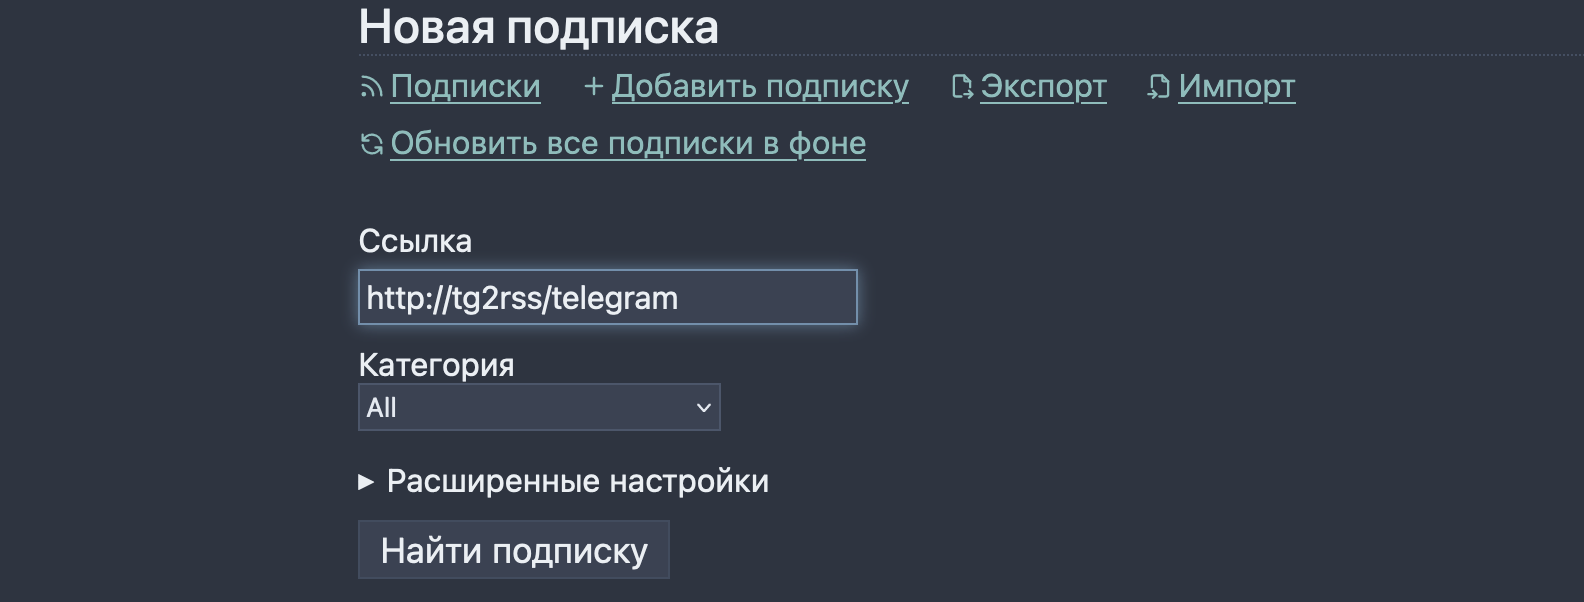 Почему Telegram не соцсеть и не блог-платформа